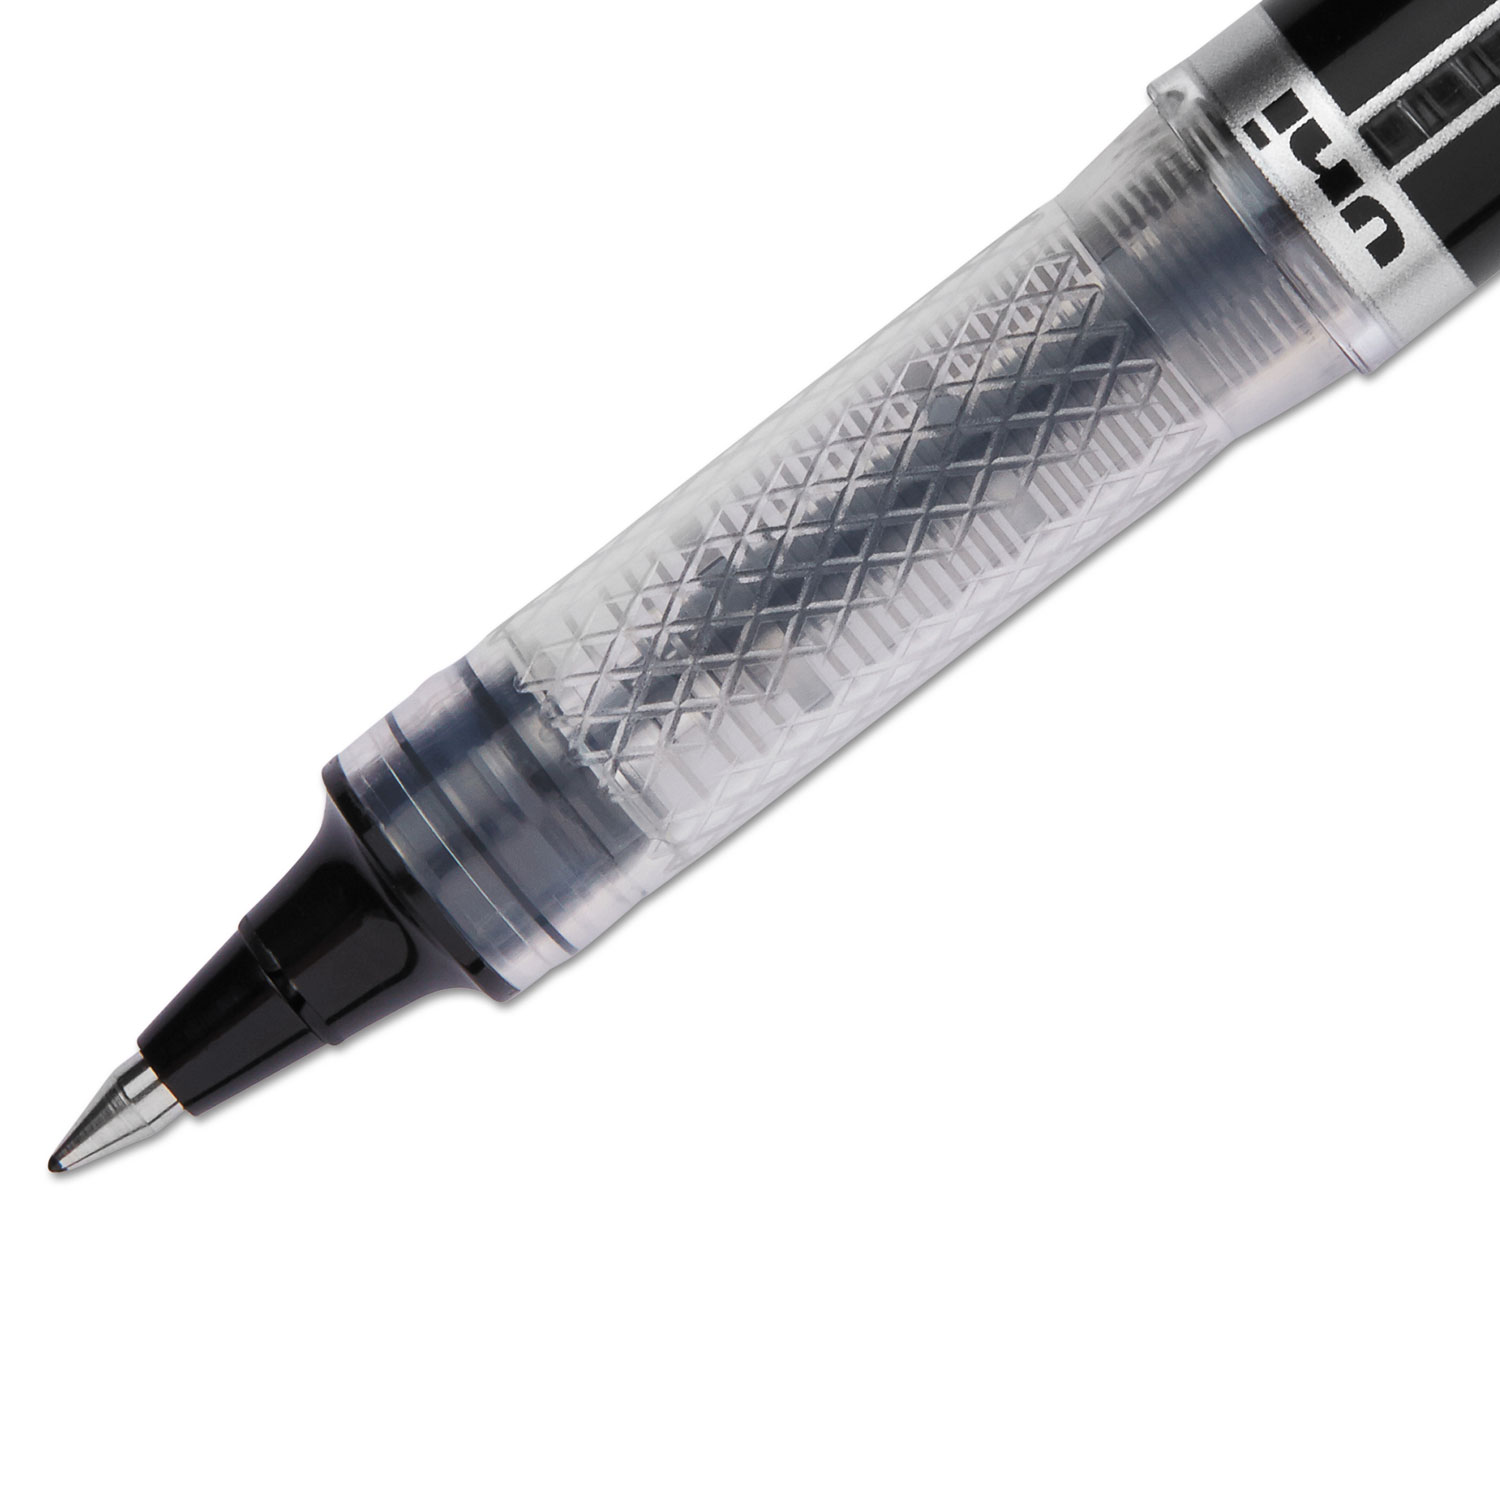 VISION ELITE Stick Roller Ball Pen, Super-Fine 0.5mm, Black Ink, Black Barrel